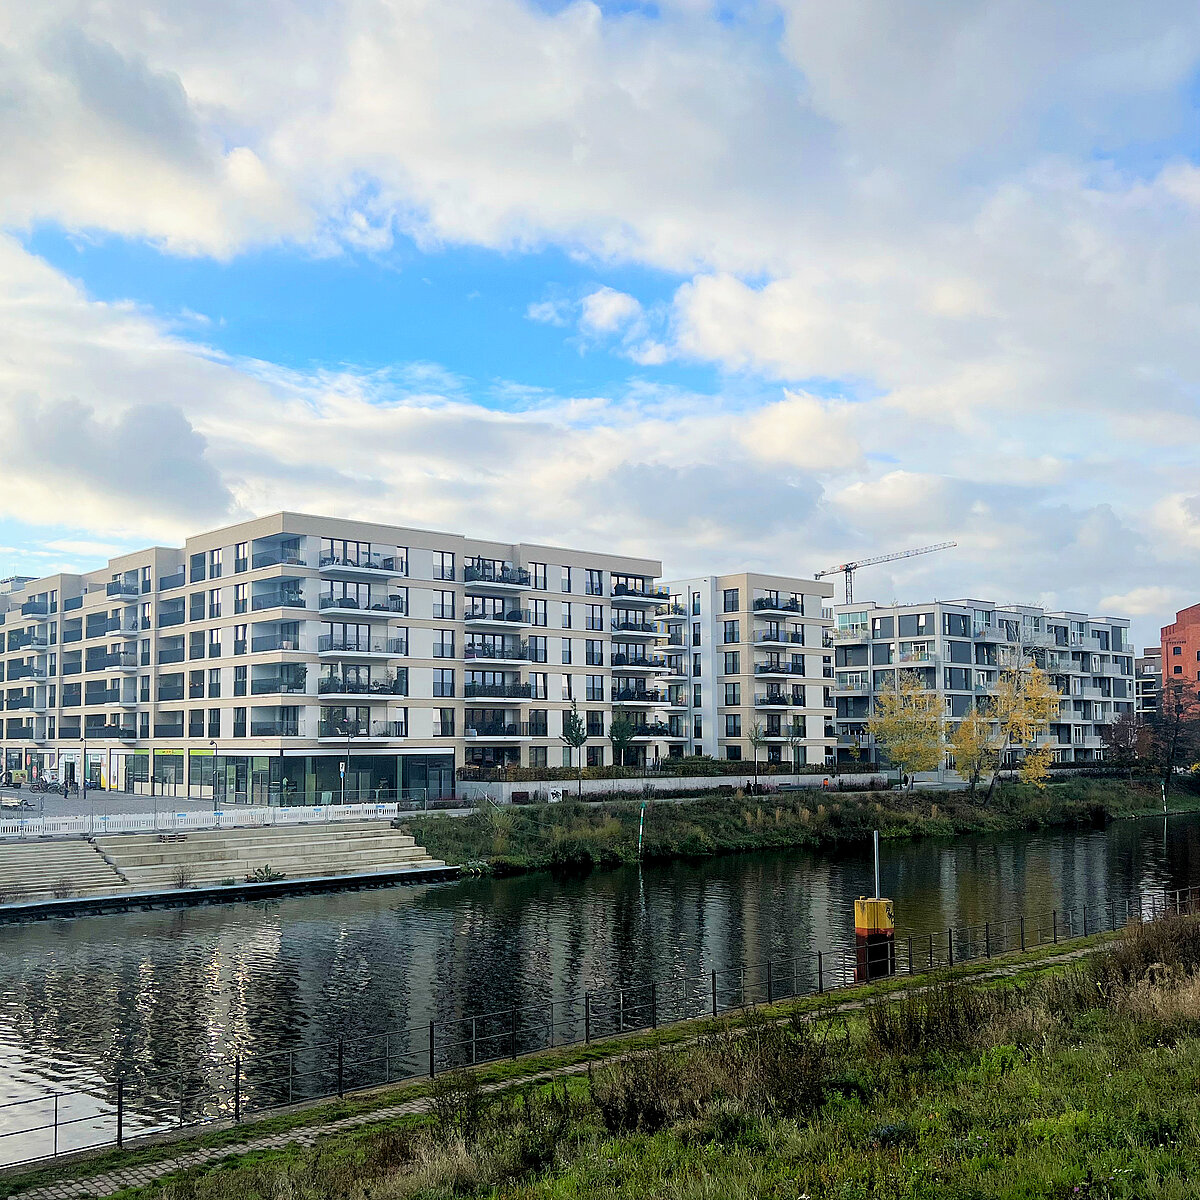 Foto der Wohnobjekte in der Europacity Berlin